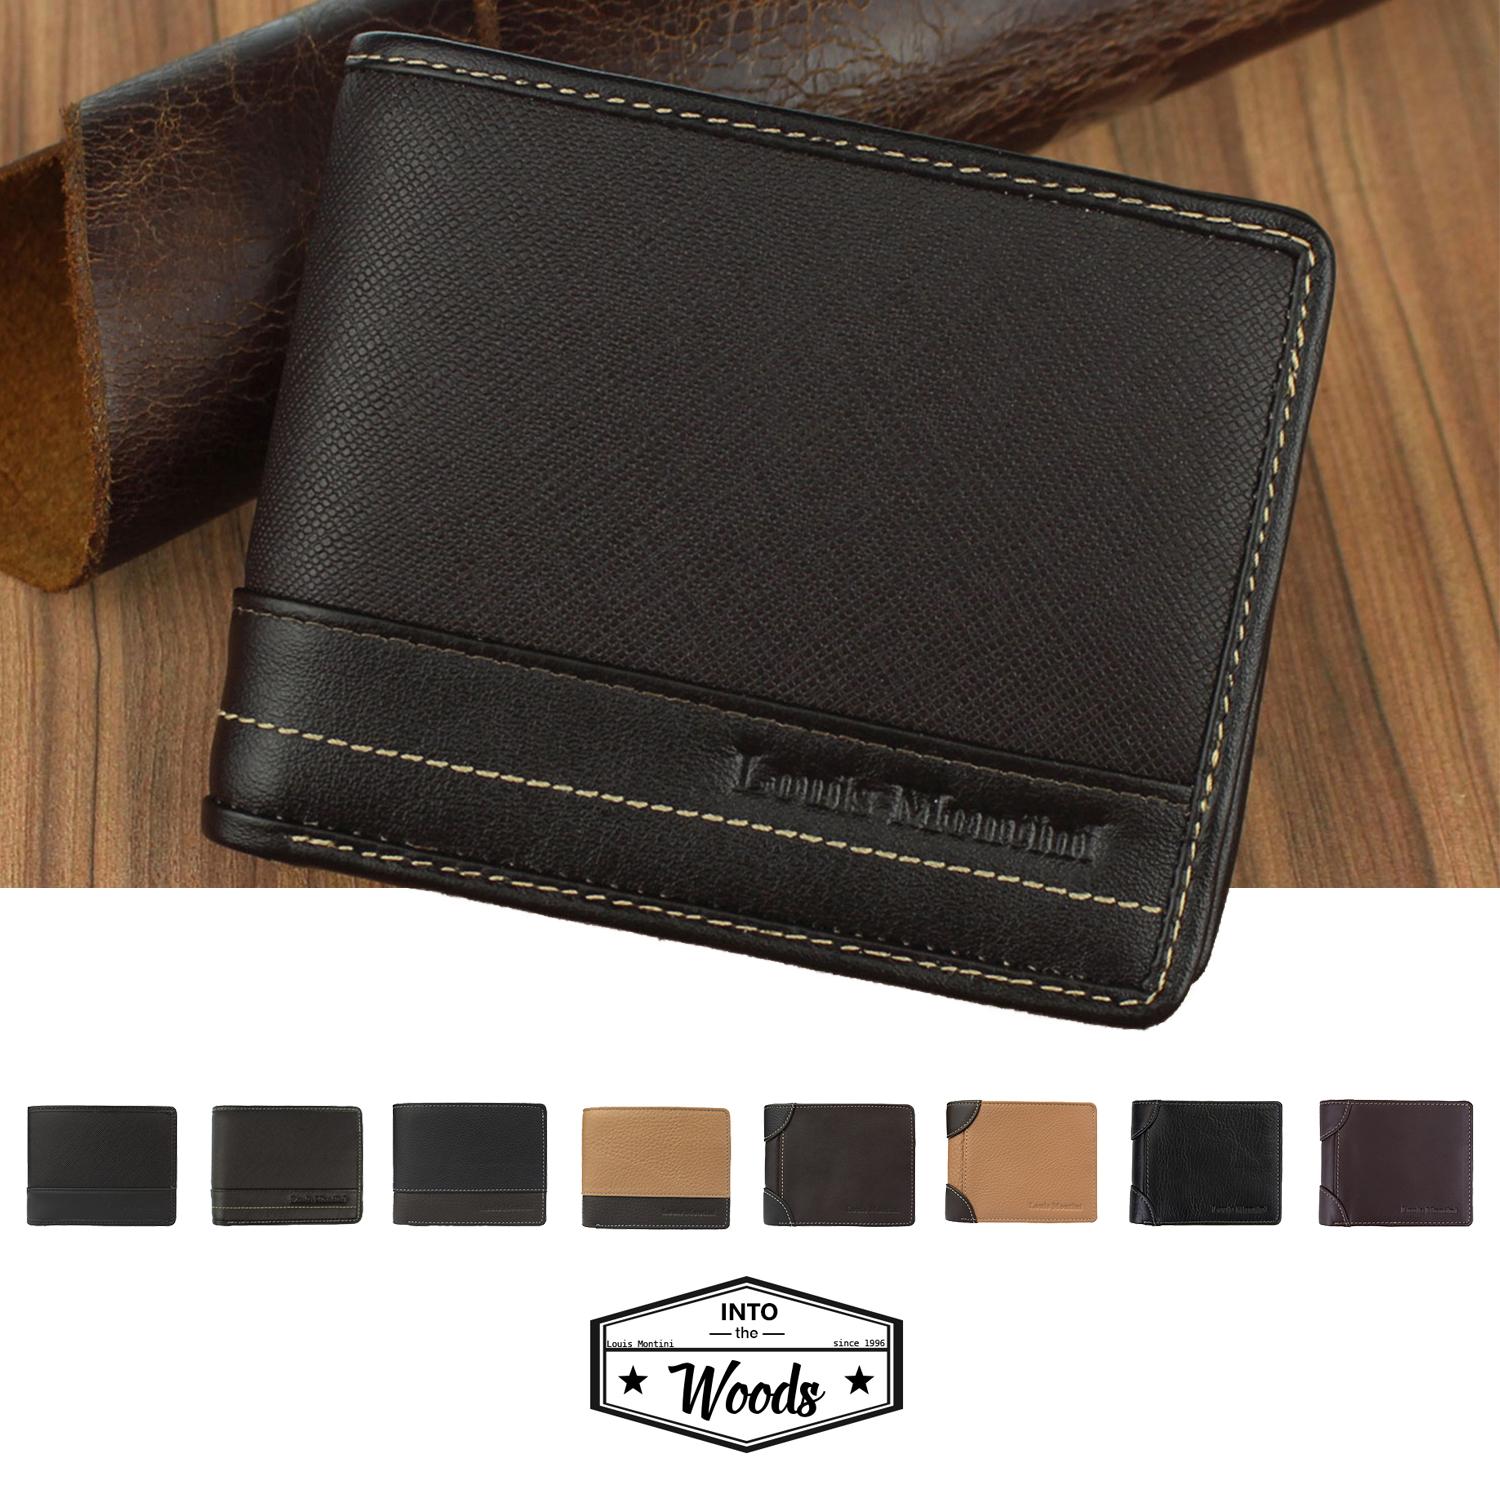 Louis Montini Vintage Wallet กระเป๋าสตางค์หนังวัว ดีไซน์คลาสสิก ย้อนยุค กระเป๋าหนังแท้ กระเป๋าผู้ชาย TTM083